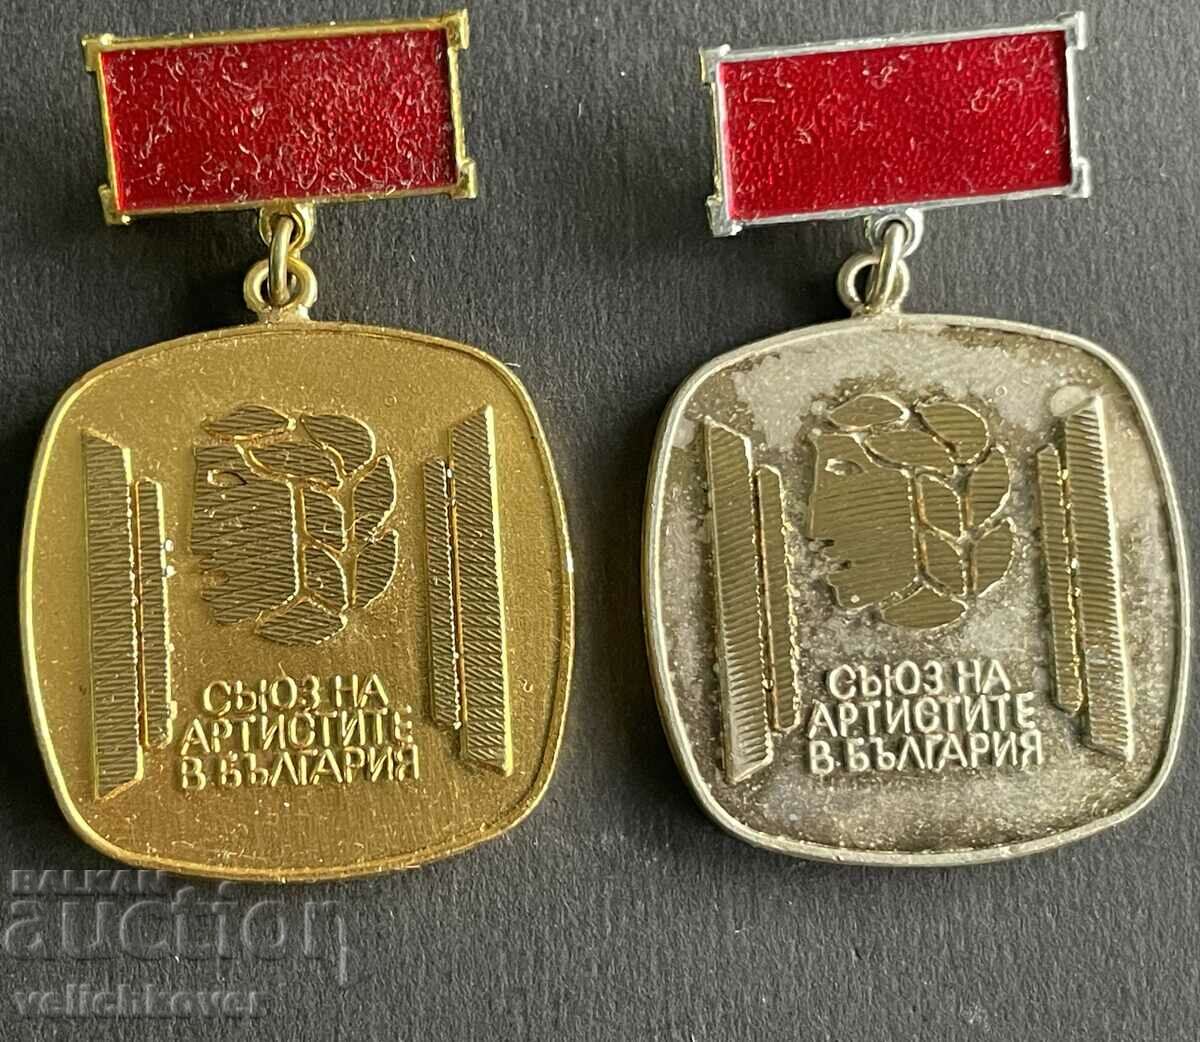 35914 Bulgaria două medalii Uniunea Artiștilor din Bulgaria